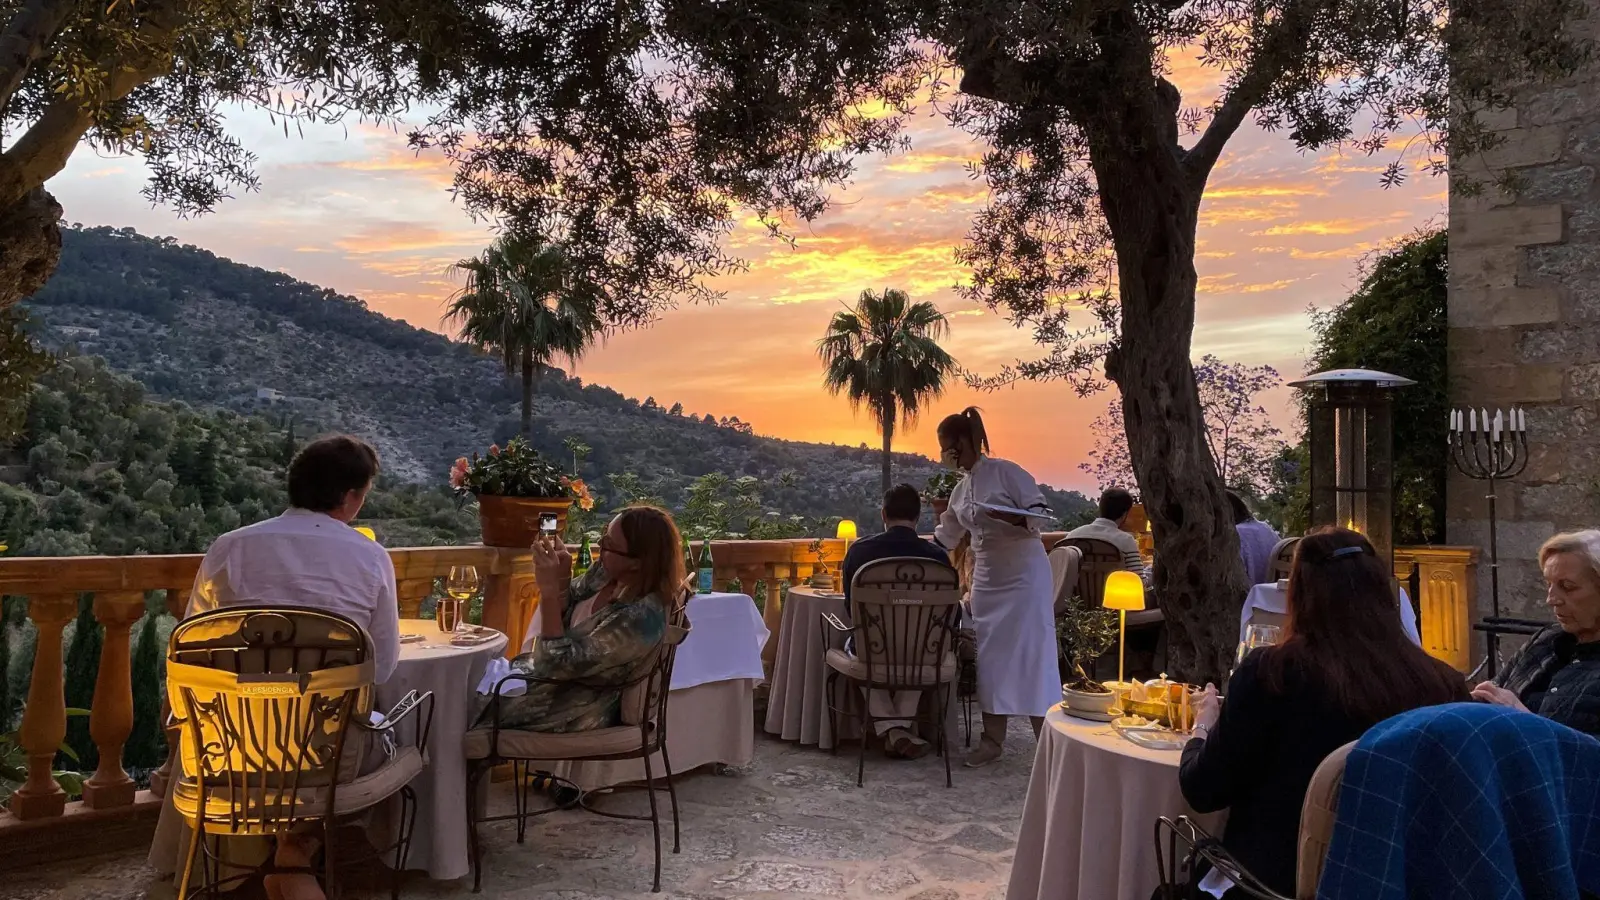 Auf der Terrasse des Restaurants El Olivo speist man unter Jahrhunderte alten Olivenbäumen und mit romantischen Blicken aufs Bergdorf Deià. (Foto: Manuel Meyer/dpa-tmn)